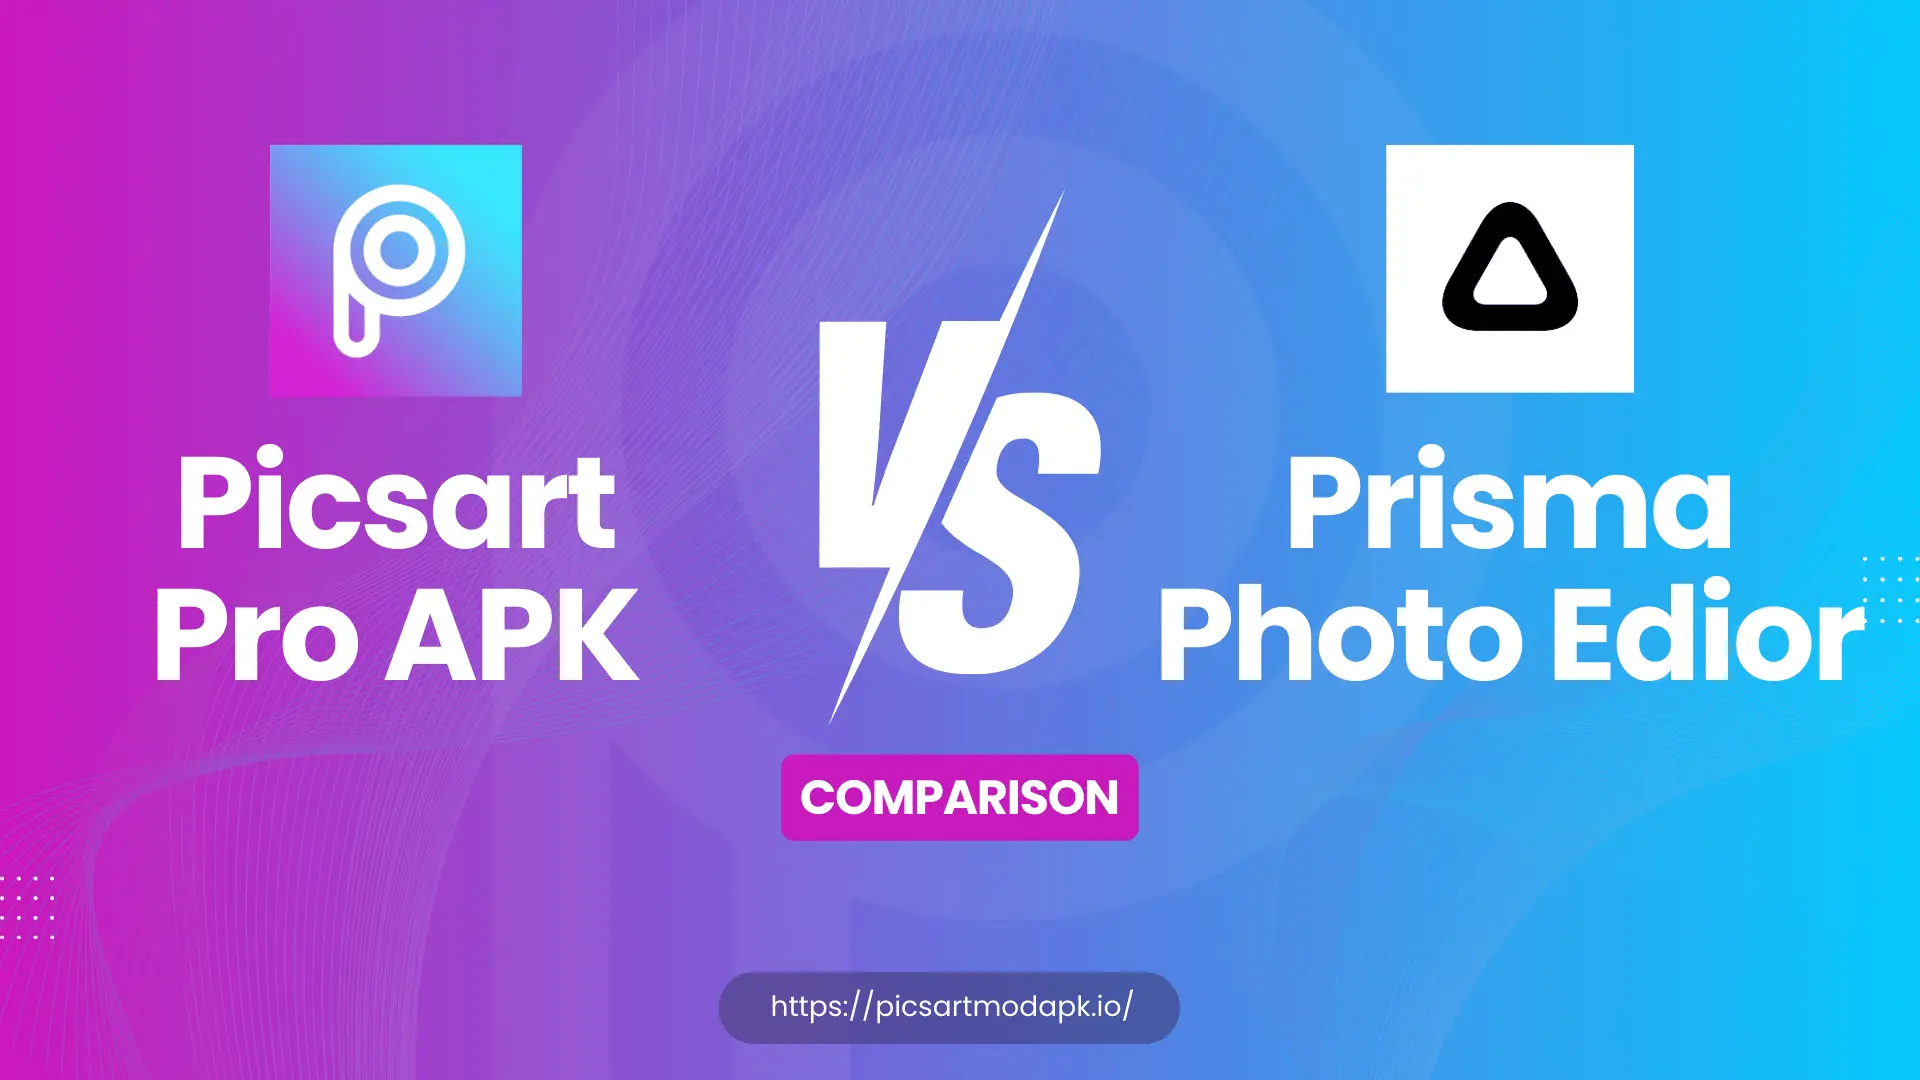 Picsart Pro APK vs Prisma Photo Editor - Detailed Guide and Comparison